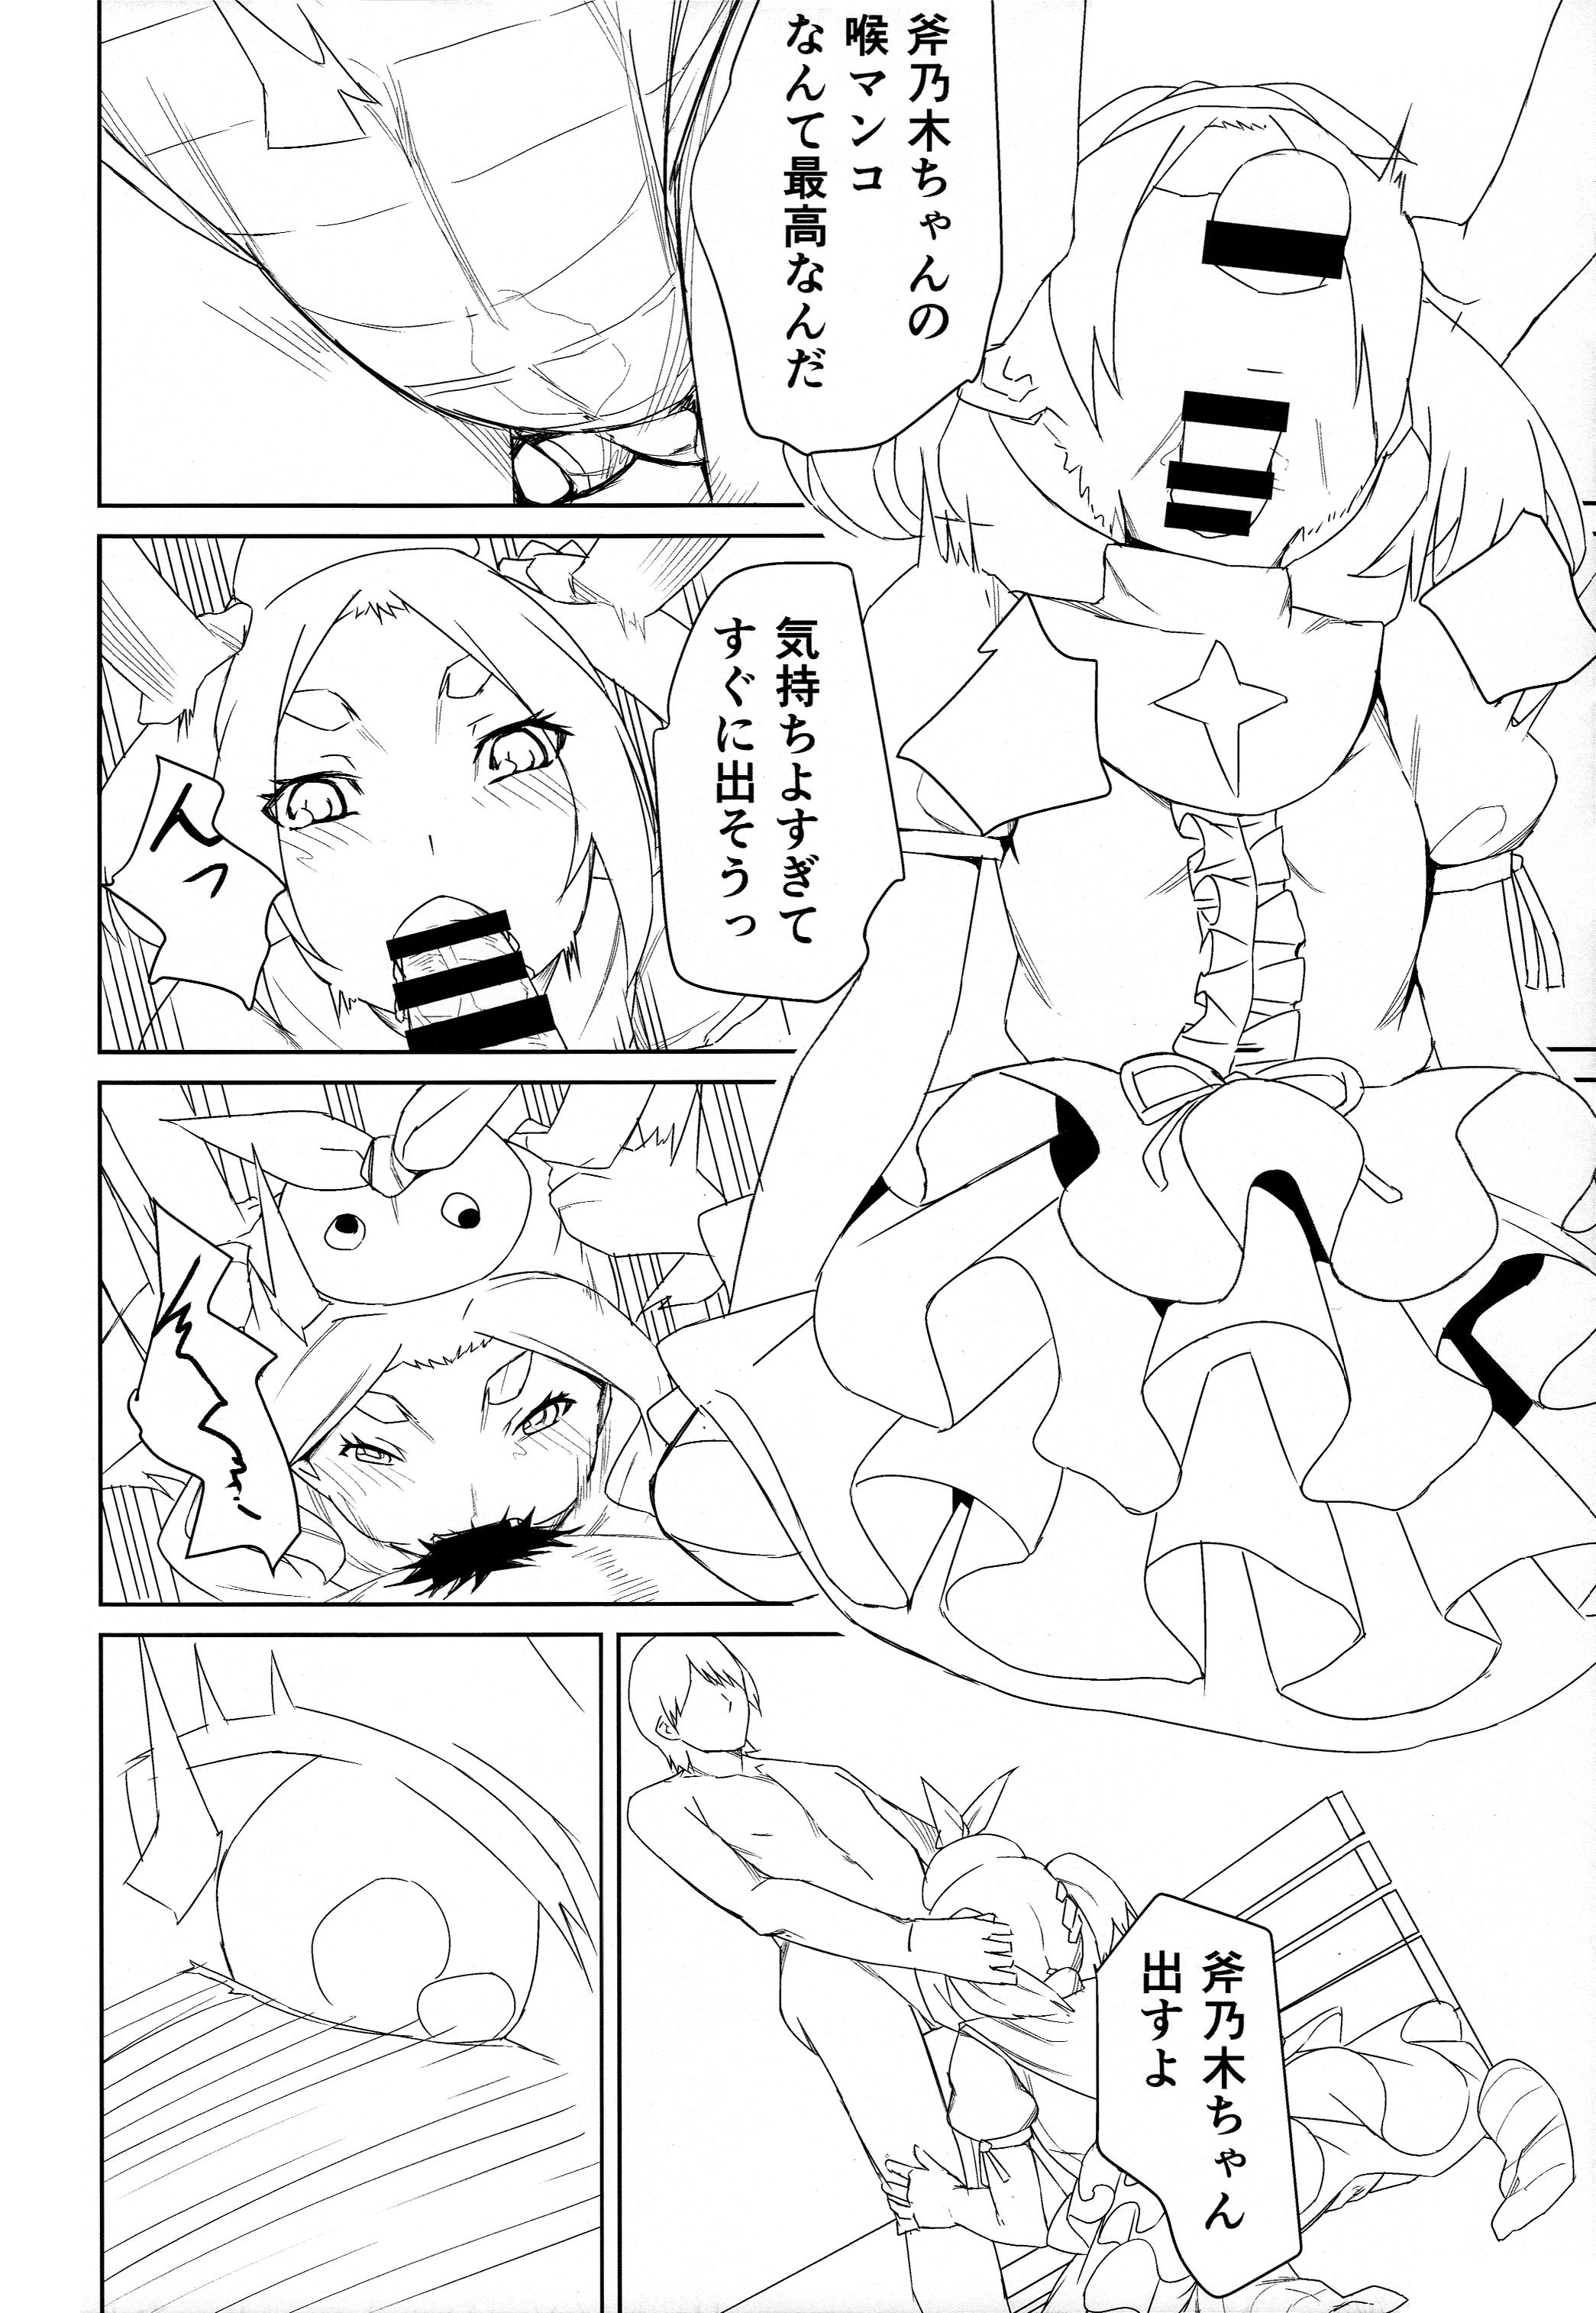 Blows Yotsugi Check - Bakemonogatari Gang Bang - Page 11